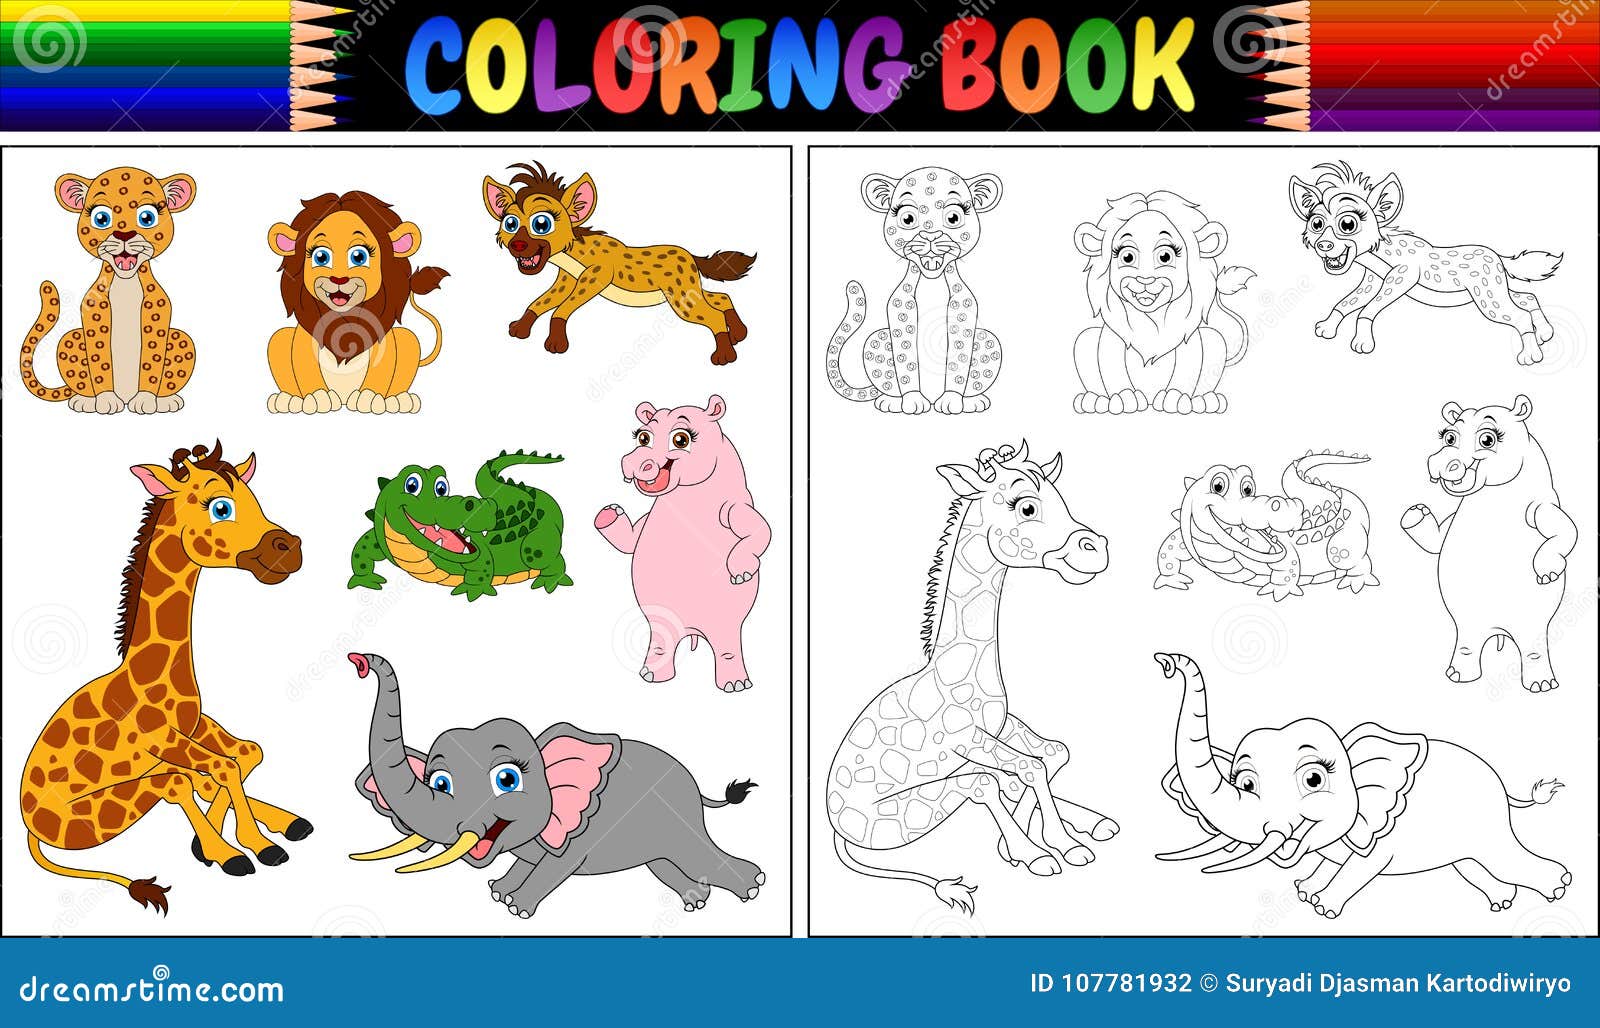 Livrinho de animais para colorir grátis - em PDF (+ de 25)